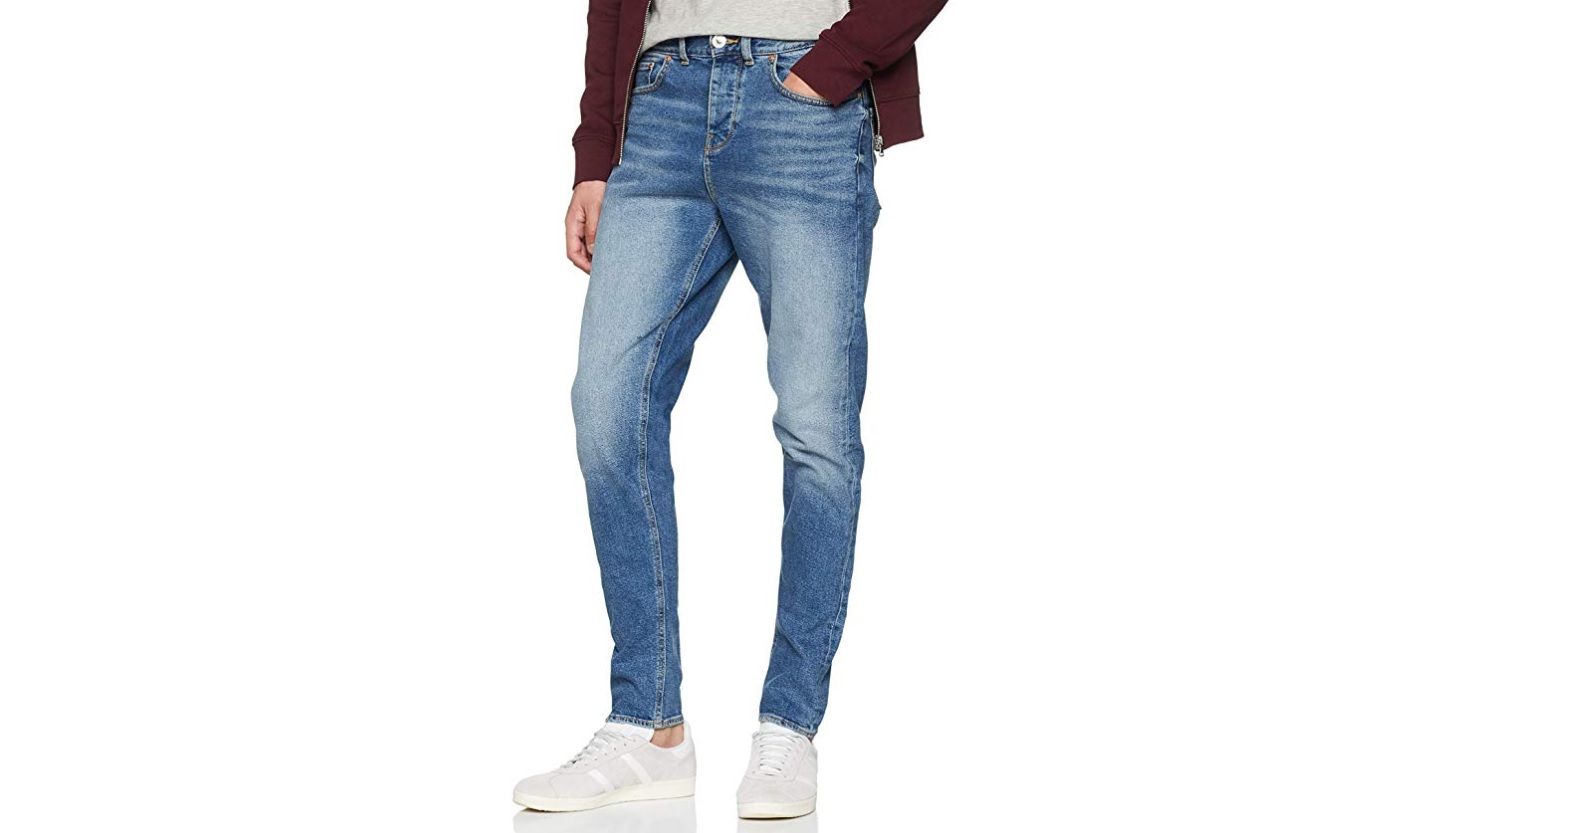 ¡Mitad de precio! Pantalones New Look Bright Blue Taper por sólo 13,51€ (antes 24,70€)